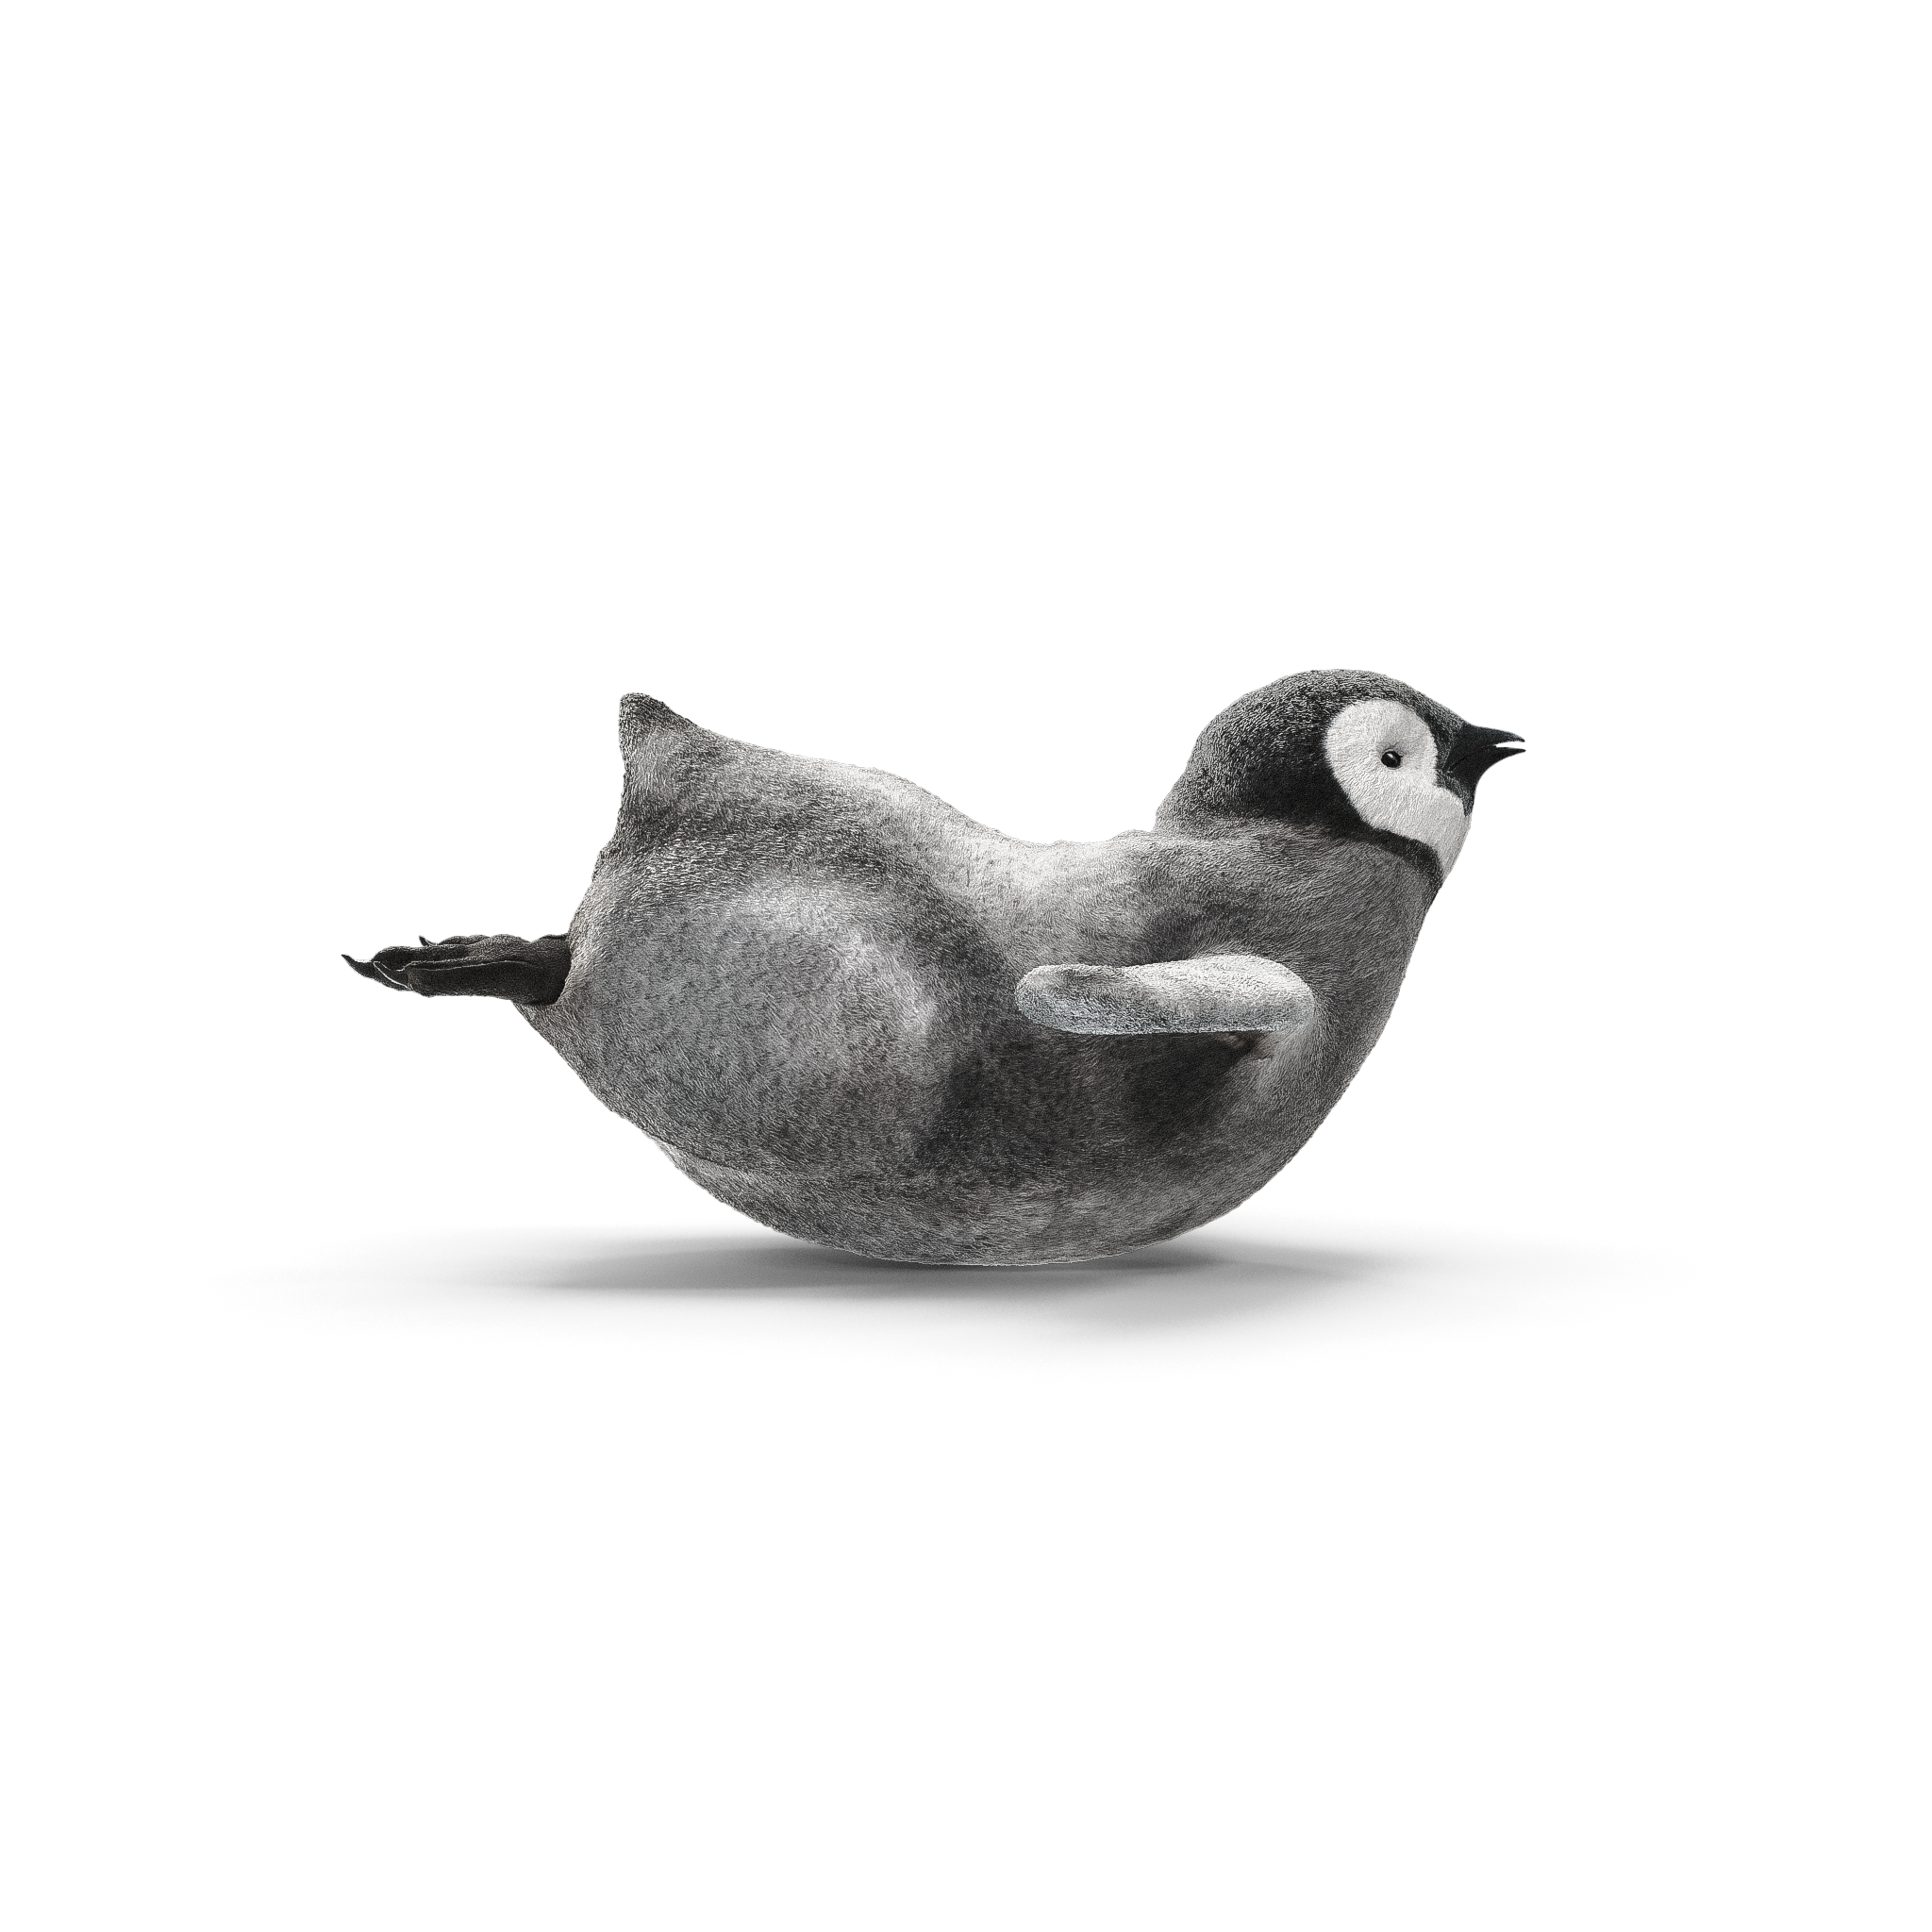 Image de pingouins en 3D pour le studio et agence de création de design graphique spécialisé dans la création de site internet et d’identité visuelle : Studio Edoras présent sur Paris, Neuilly sur Seine et Bordeaux